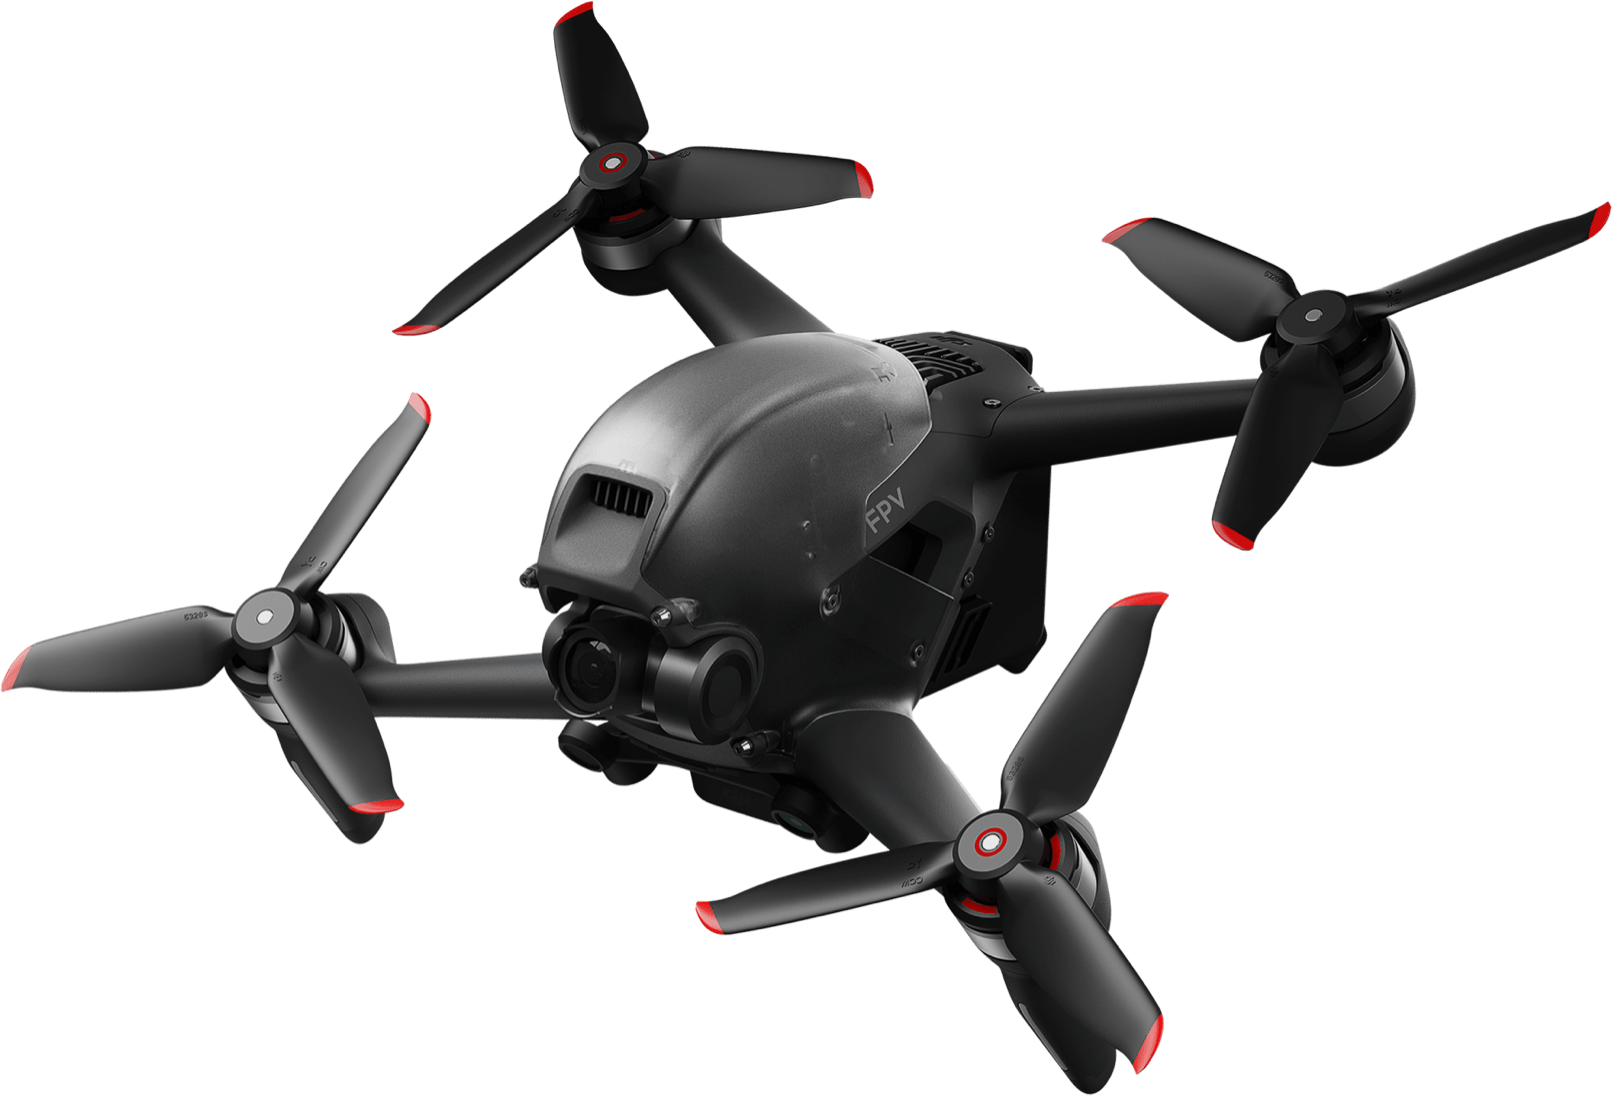 drones with video cameras